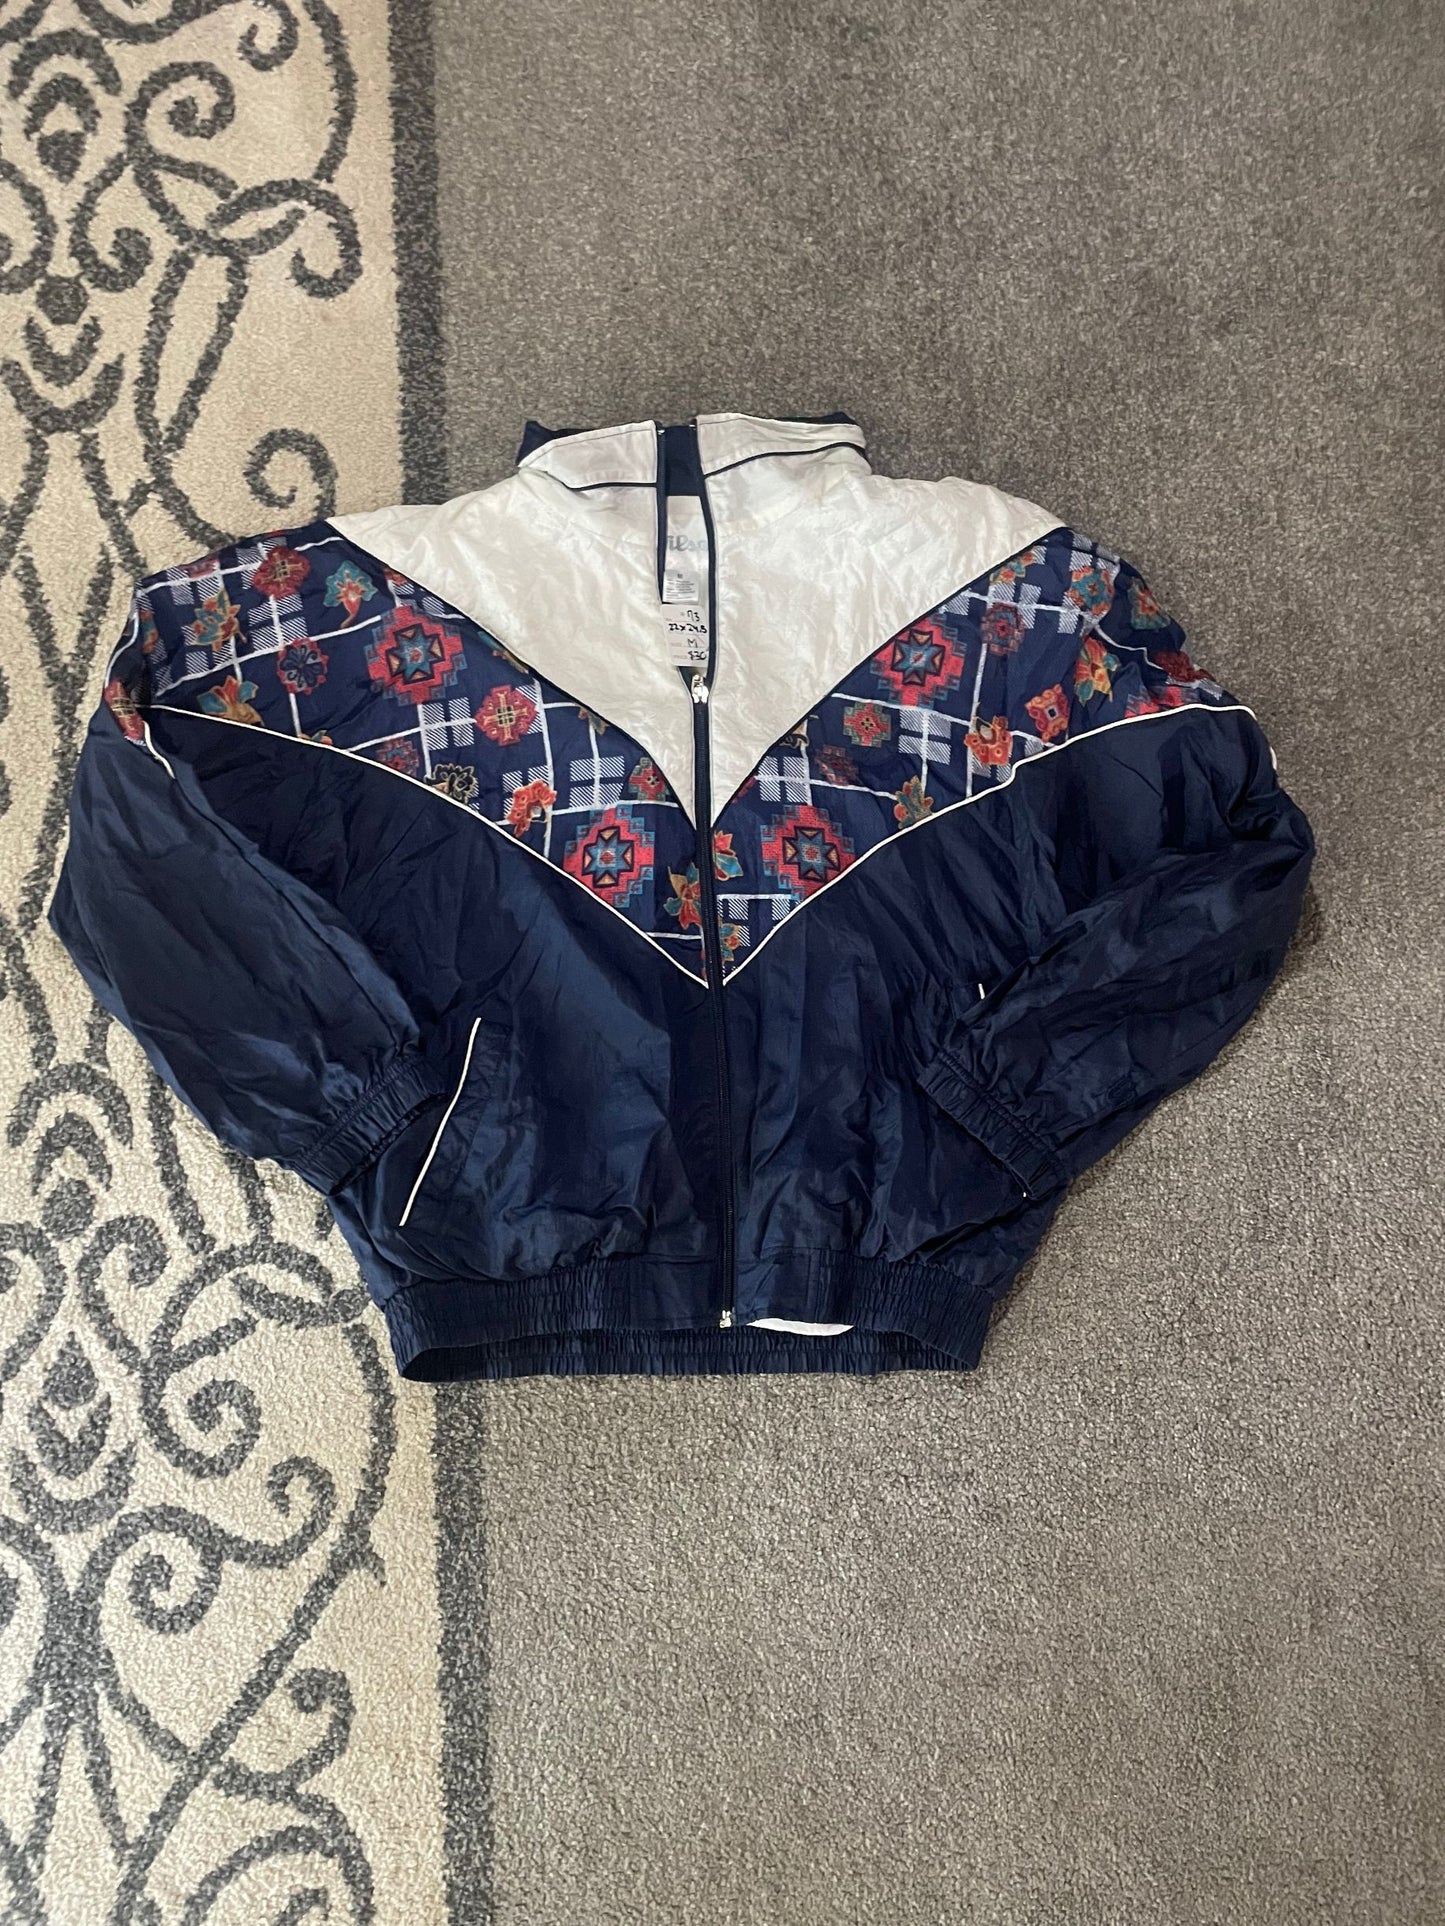 Vintage 80s 90s Windbreaker Jacket M (73) Holyship